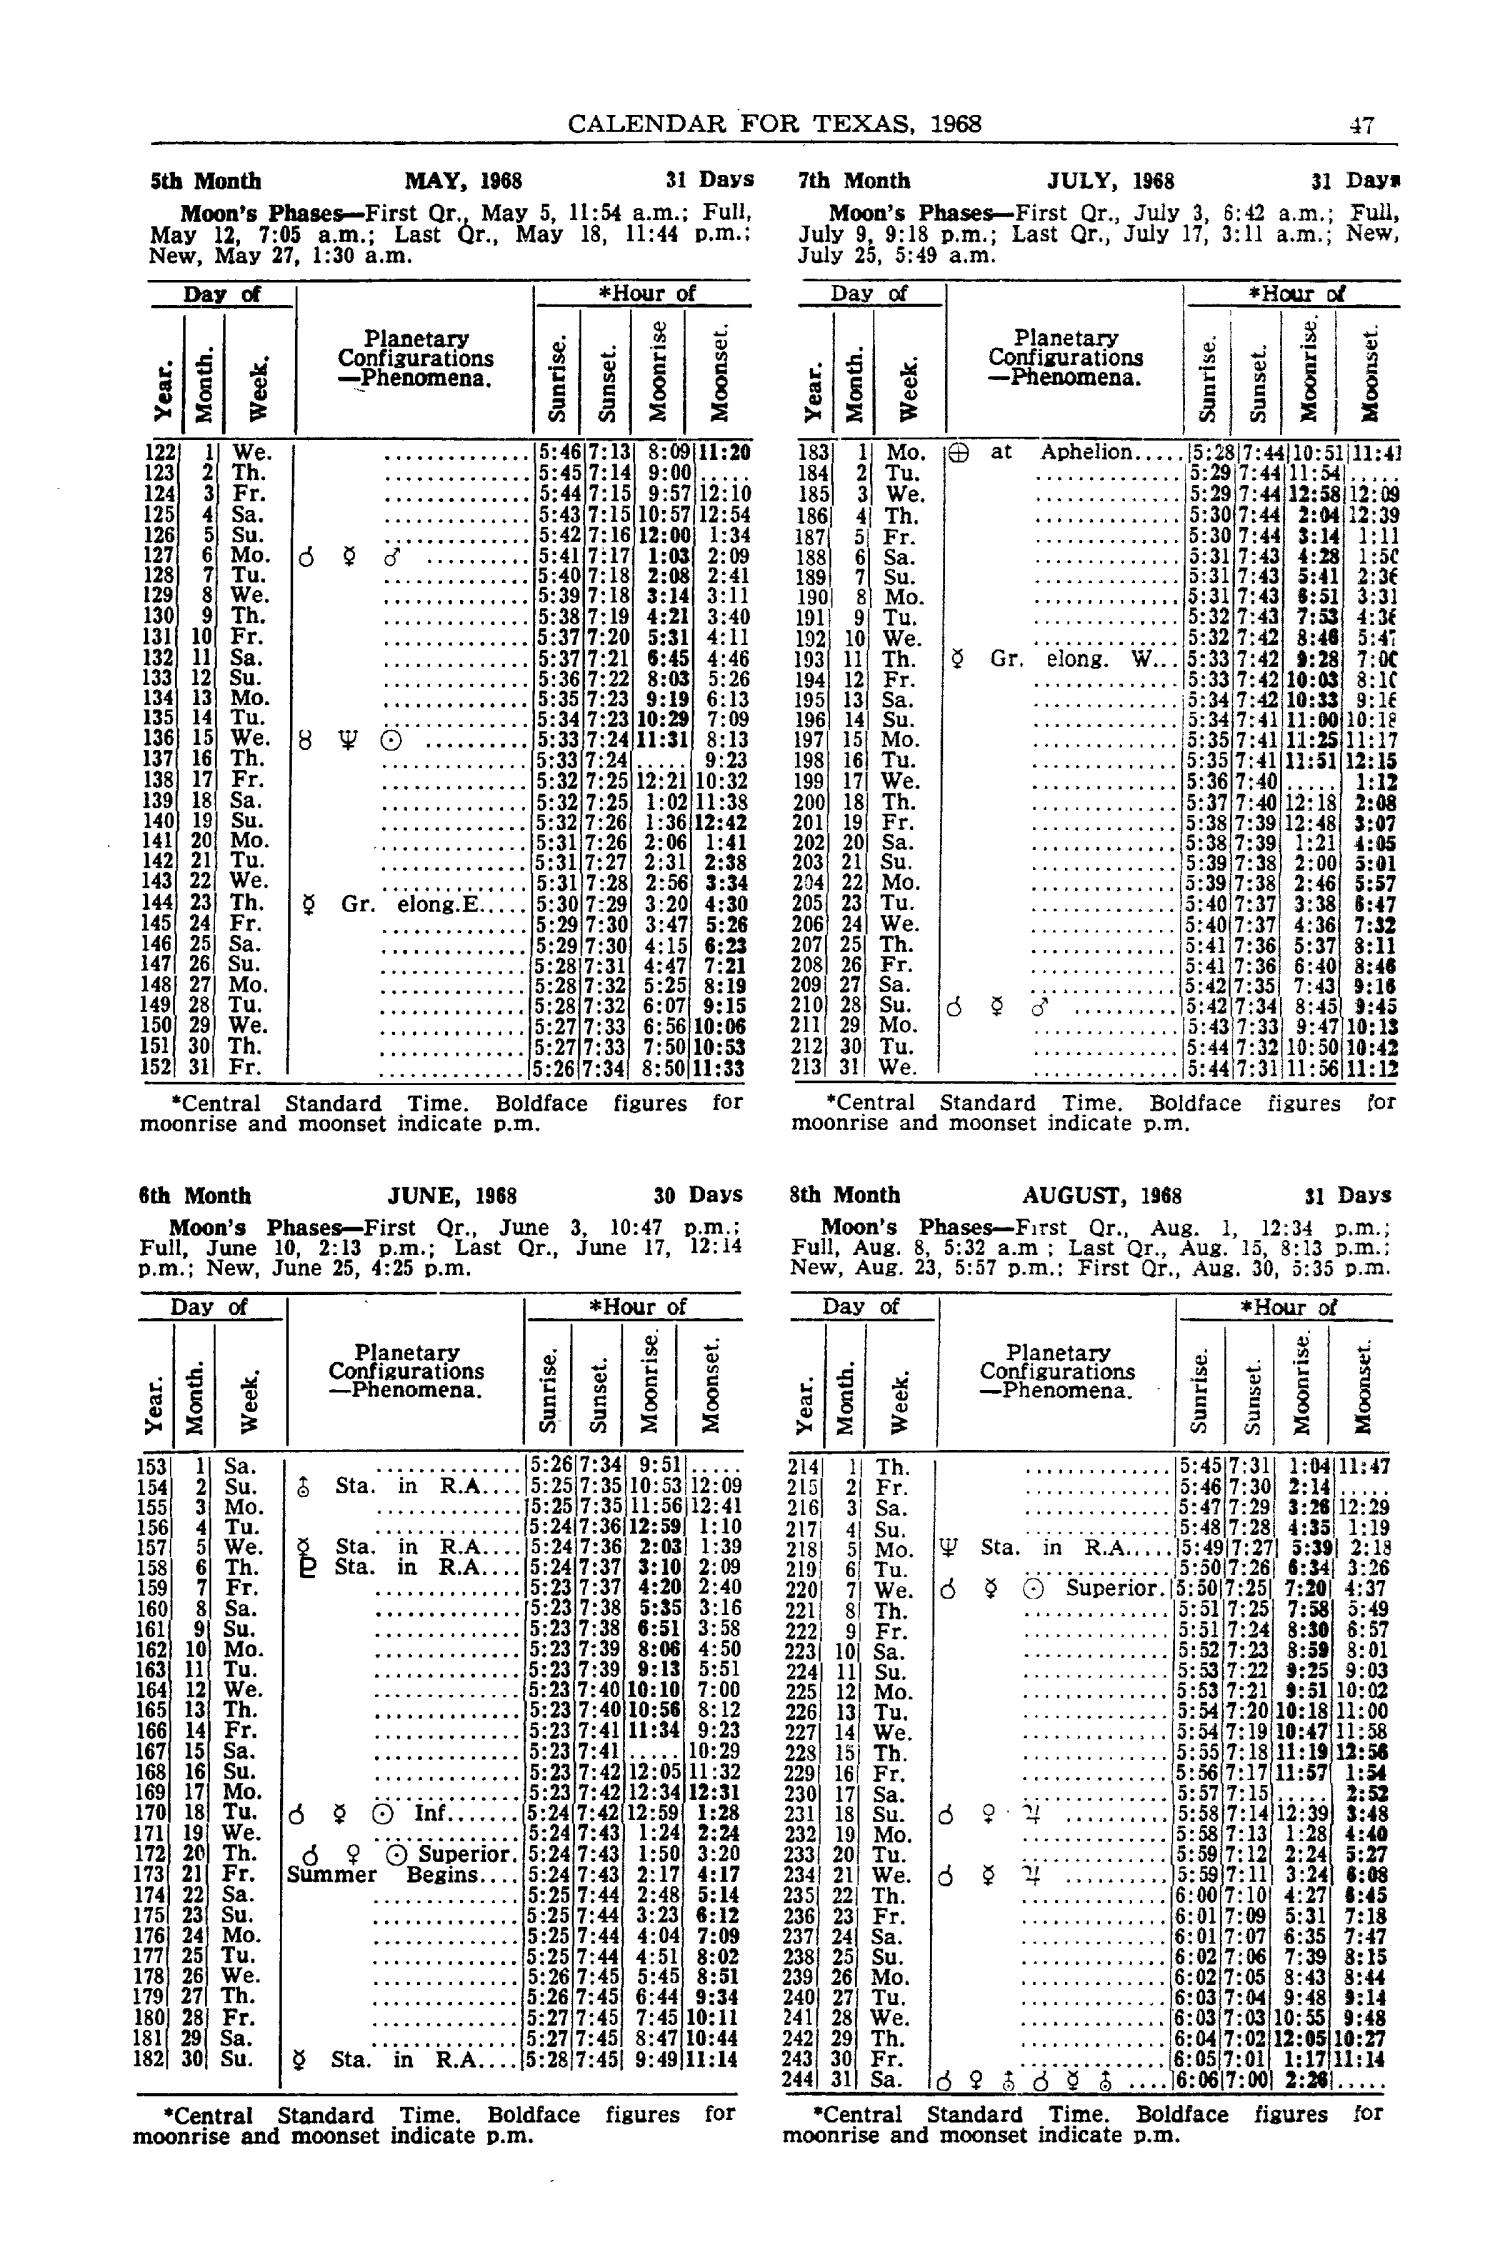 Texas Almanac, 1968-1969
                                                
                                                    47
                                                